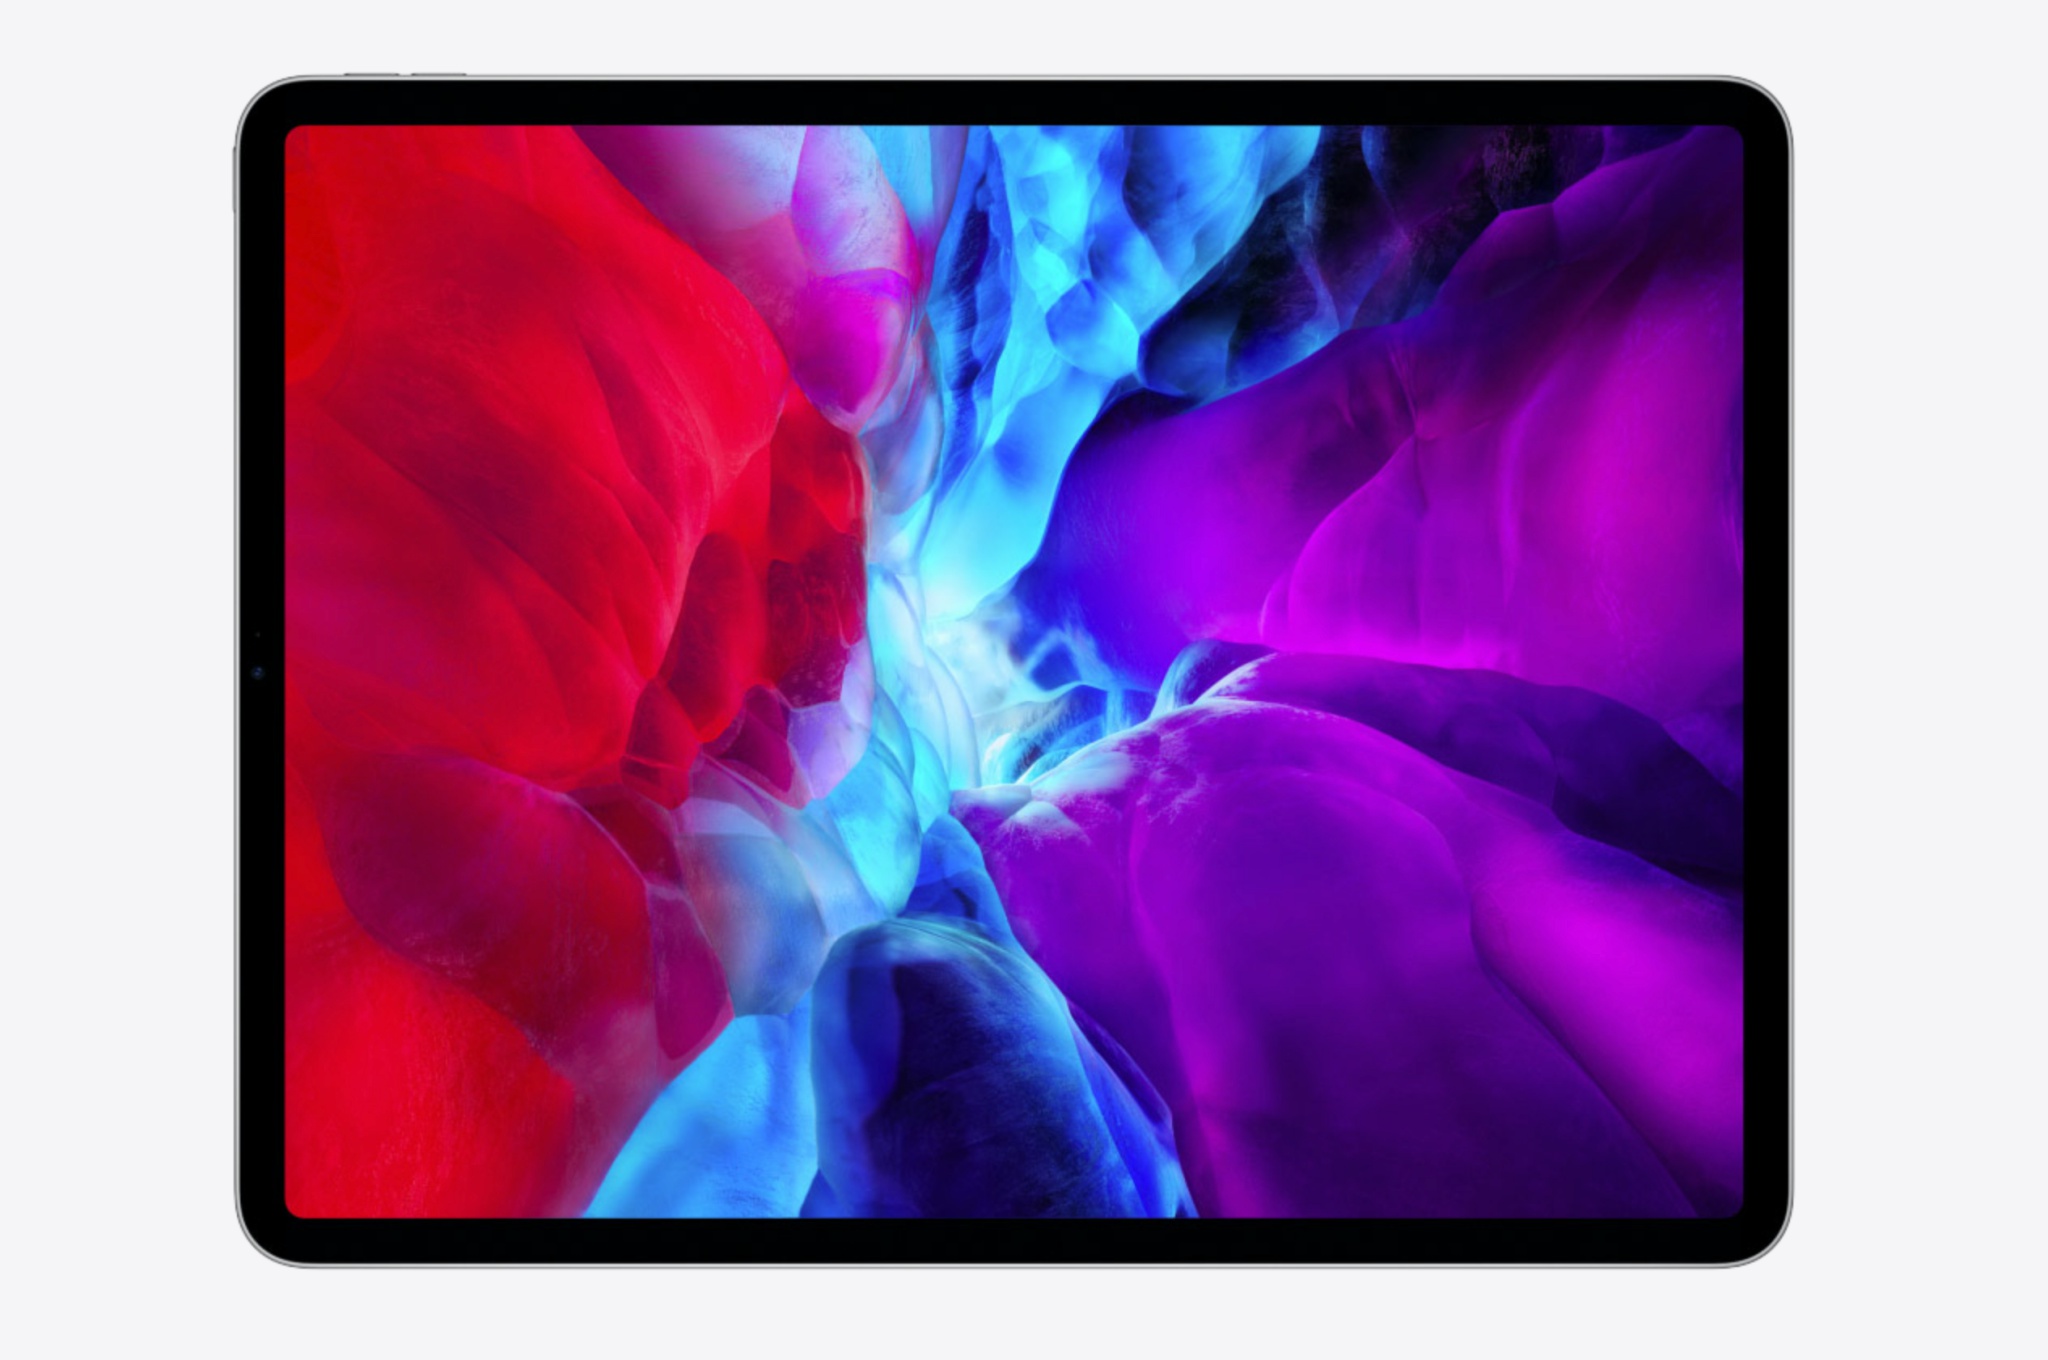 Chia sẻ bộ ảnh nền của iPad Pro 2018 vừa ra mắt hôm qua  TECHRUMVN